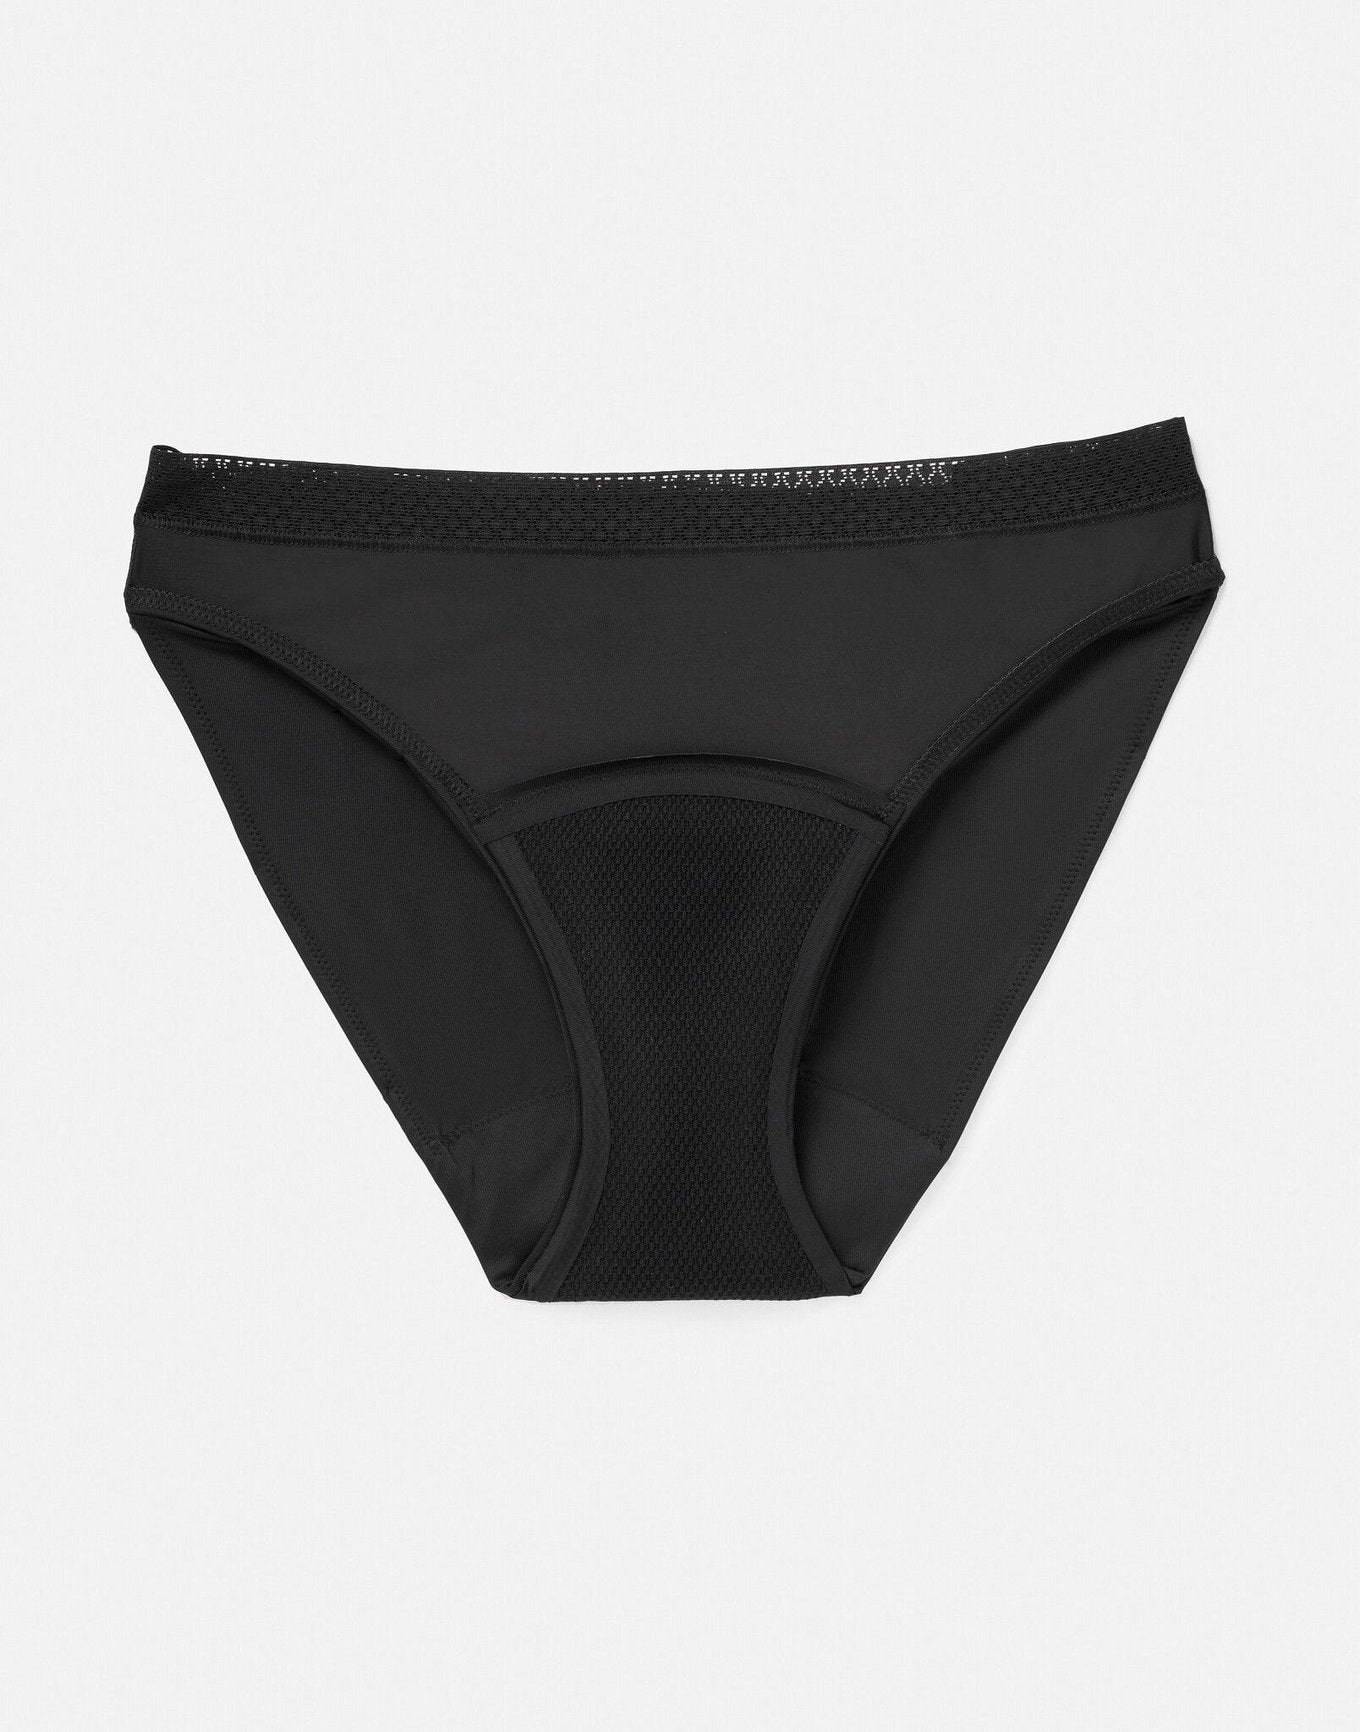 Joyja Katelin period-proof panty in color Jet Black and shape bikini